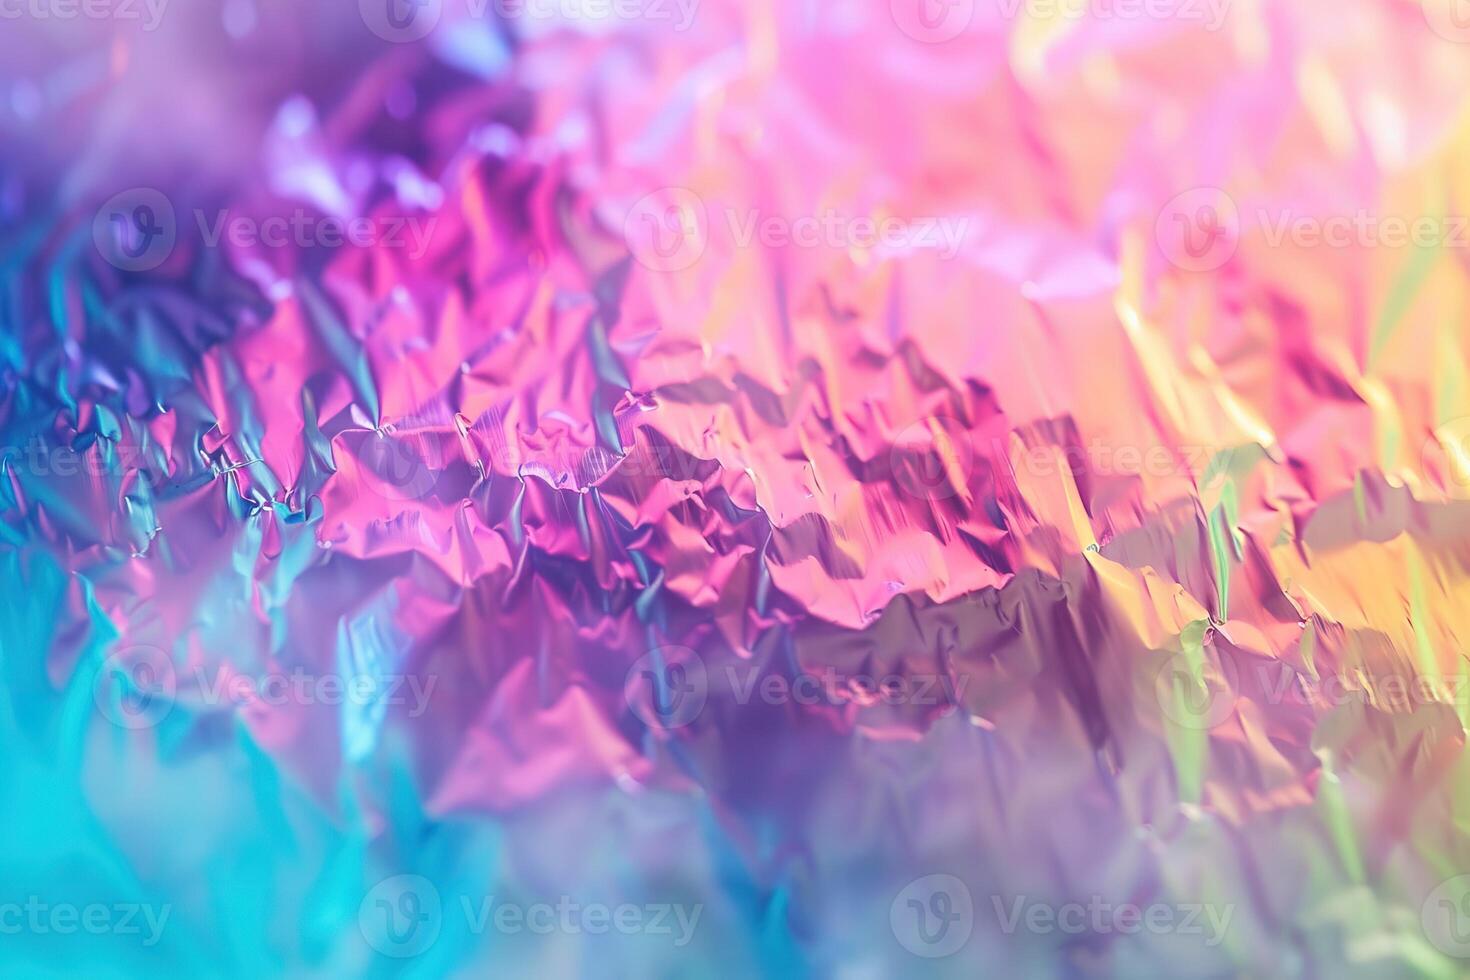 flou abstrait arc-en-ciel holographique feuille fond irisé photo